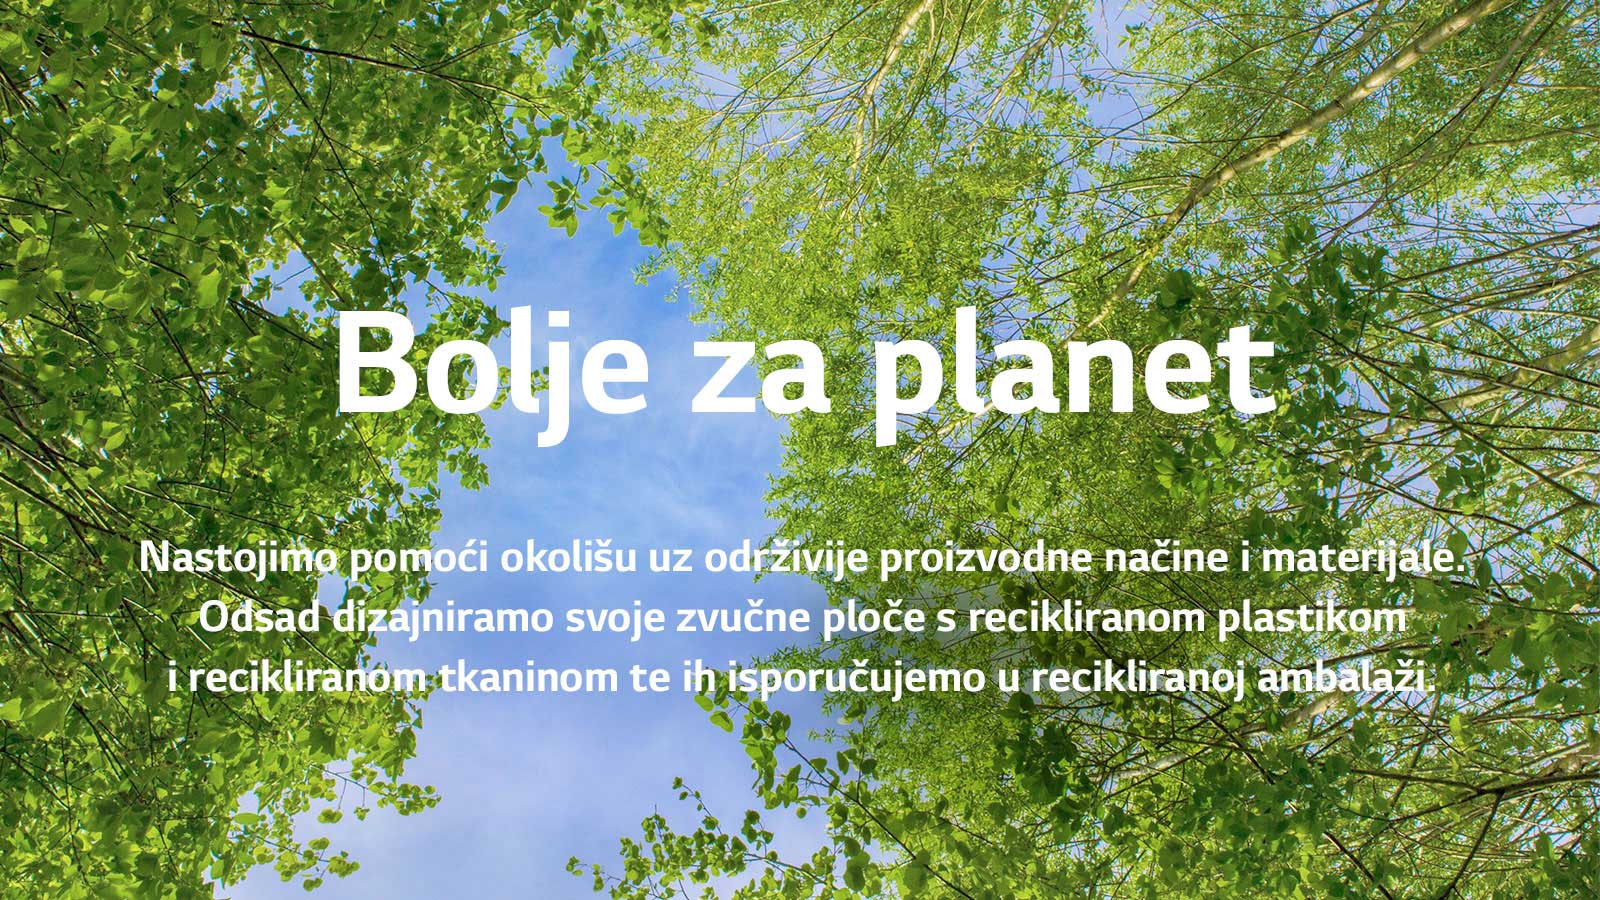 Zelena slika puna stabala bogatih lišćem između kojih se vidi nebo. Na slici piše tekst – Bolje za planet Nastojimo pomoći okolišu uz održivije proizvodne načine i materijale. Odsad dizajniramo svoje zvučne ploče s recikliranom plastikom i recikliranom tkaninom te ih isporučujemo u recikliranoj ambalaži.